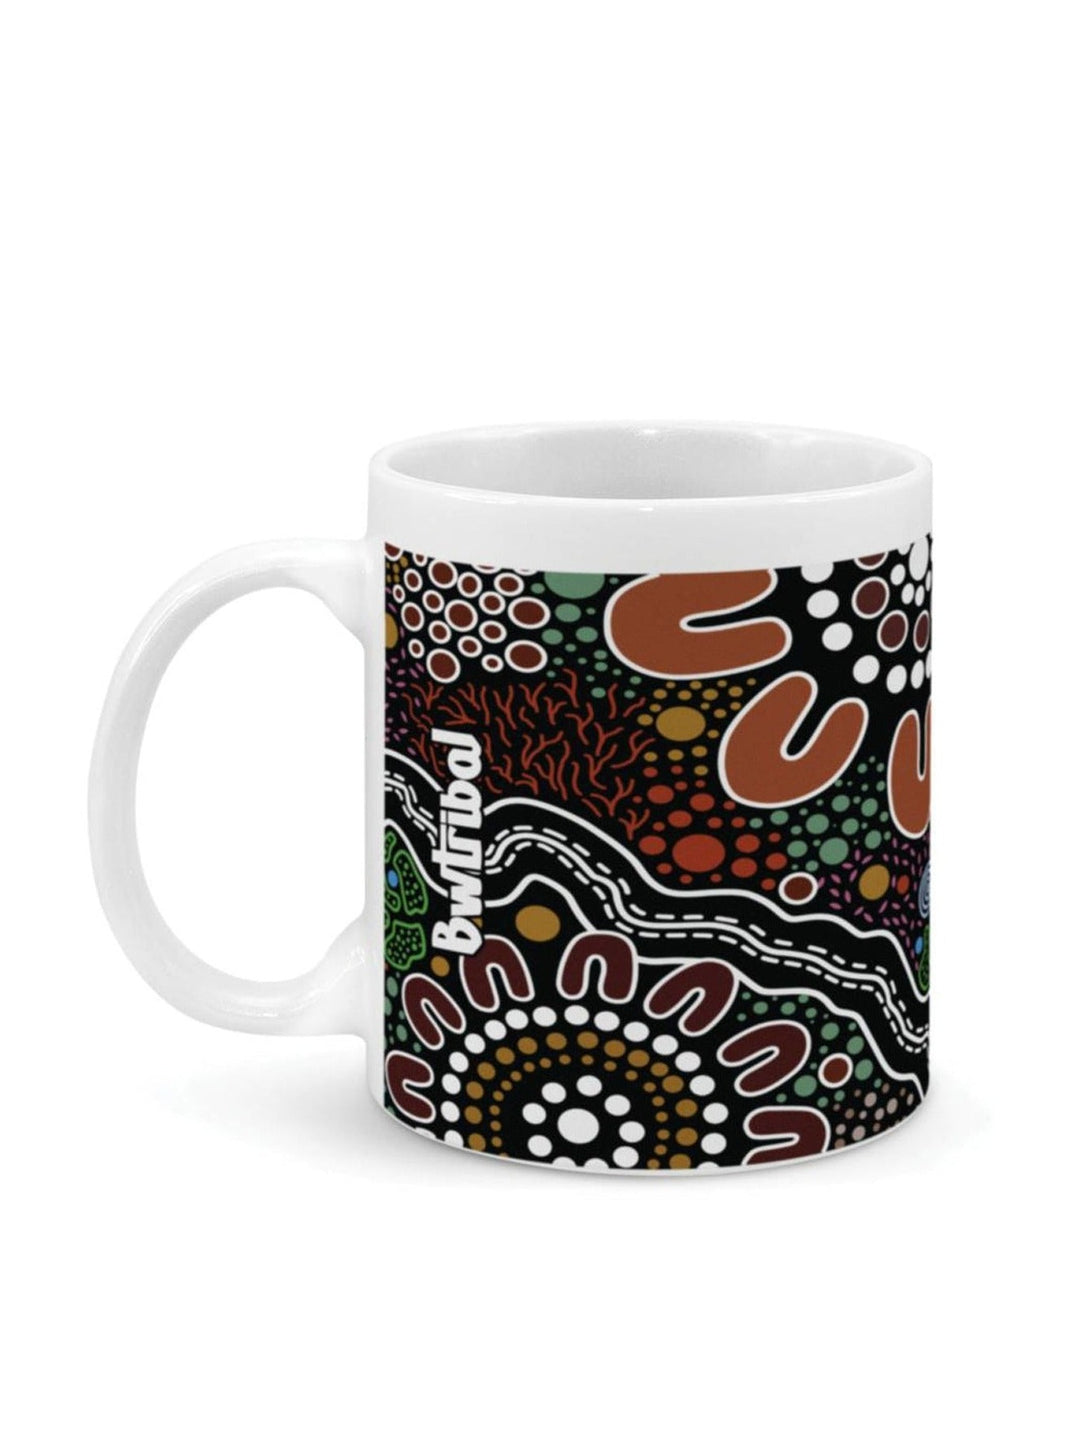 Bundian Way - Ceramic Mug